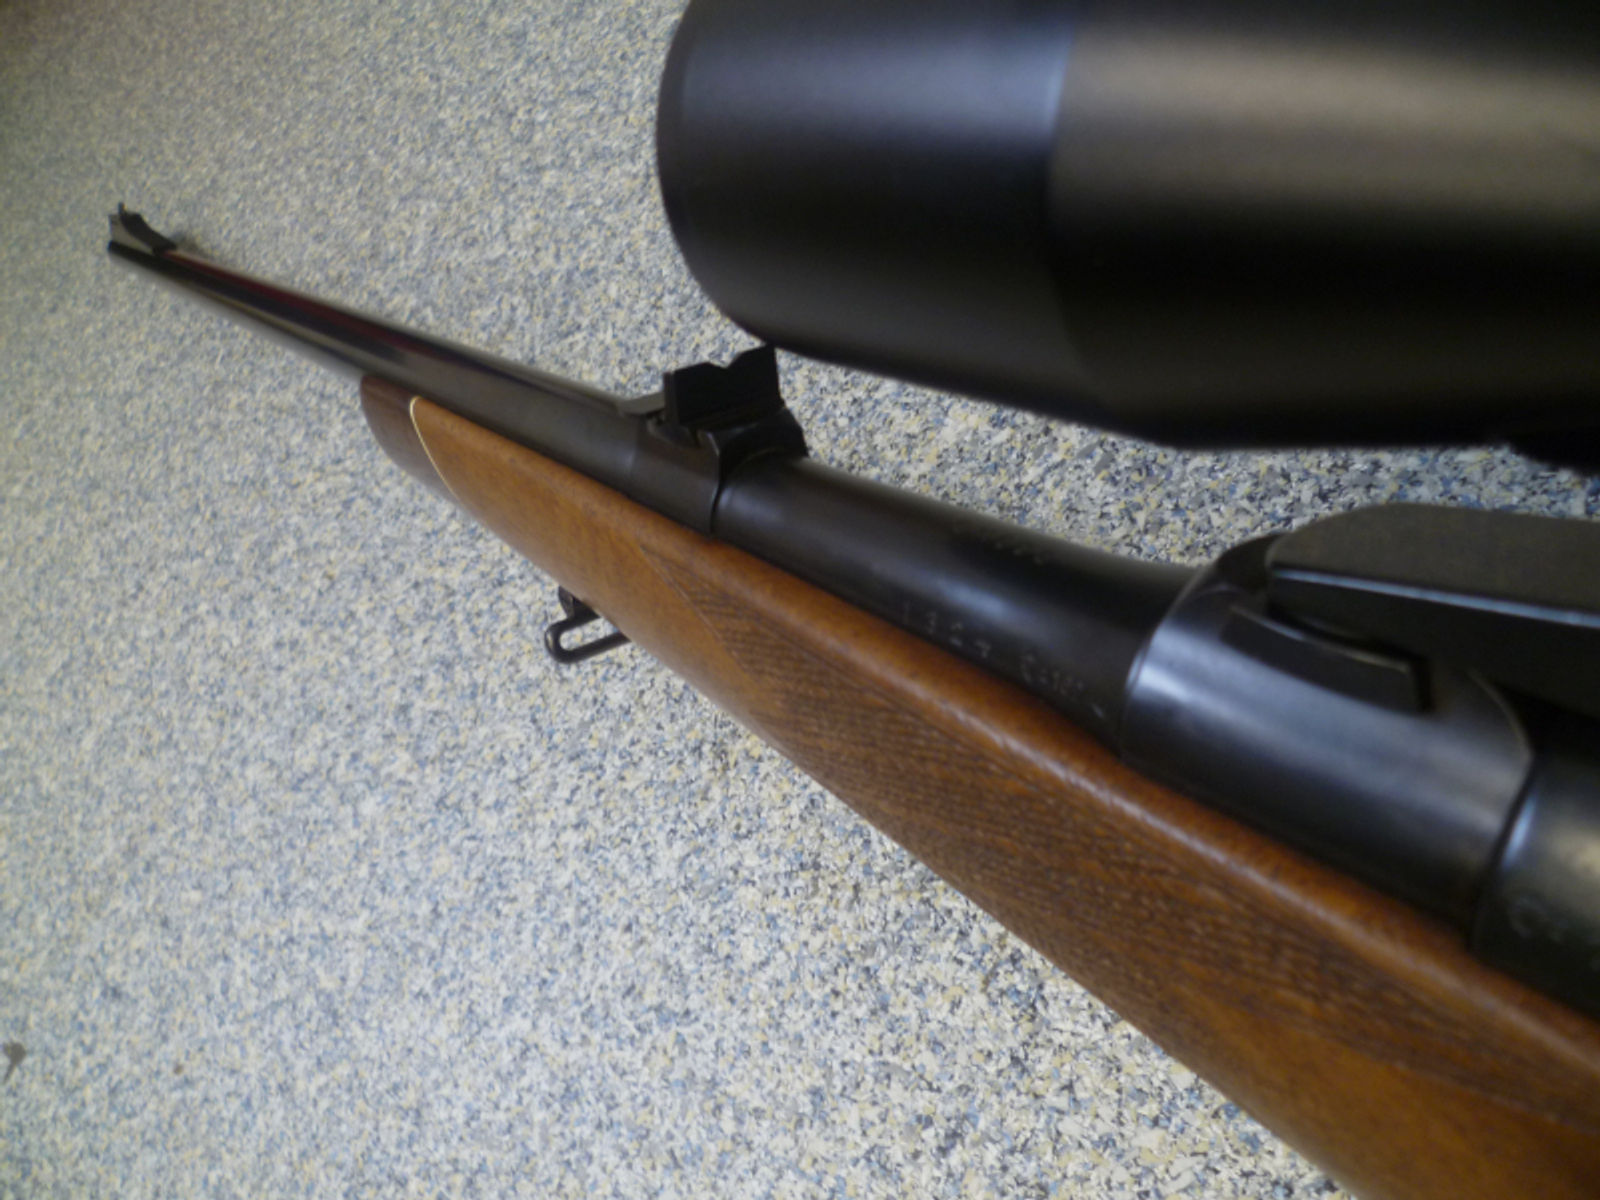 Repetierbüchse Mauser 98 8x68S Zeiss